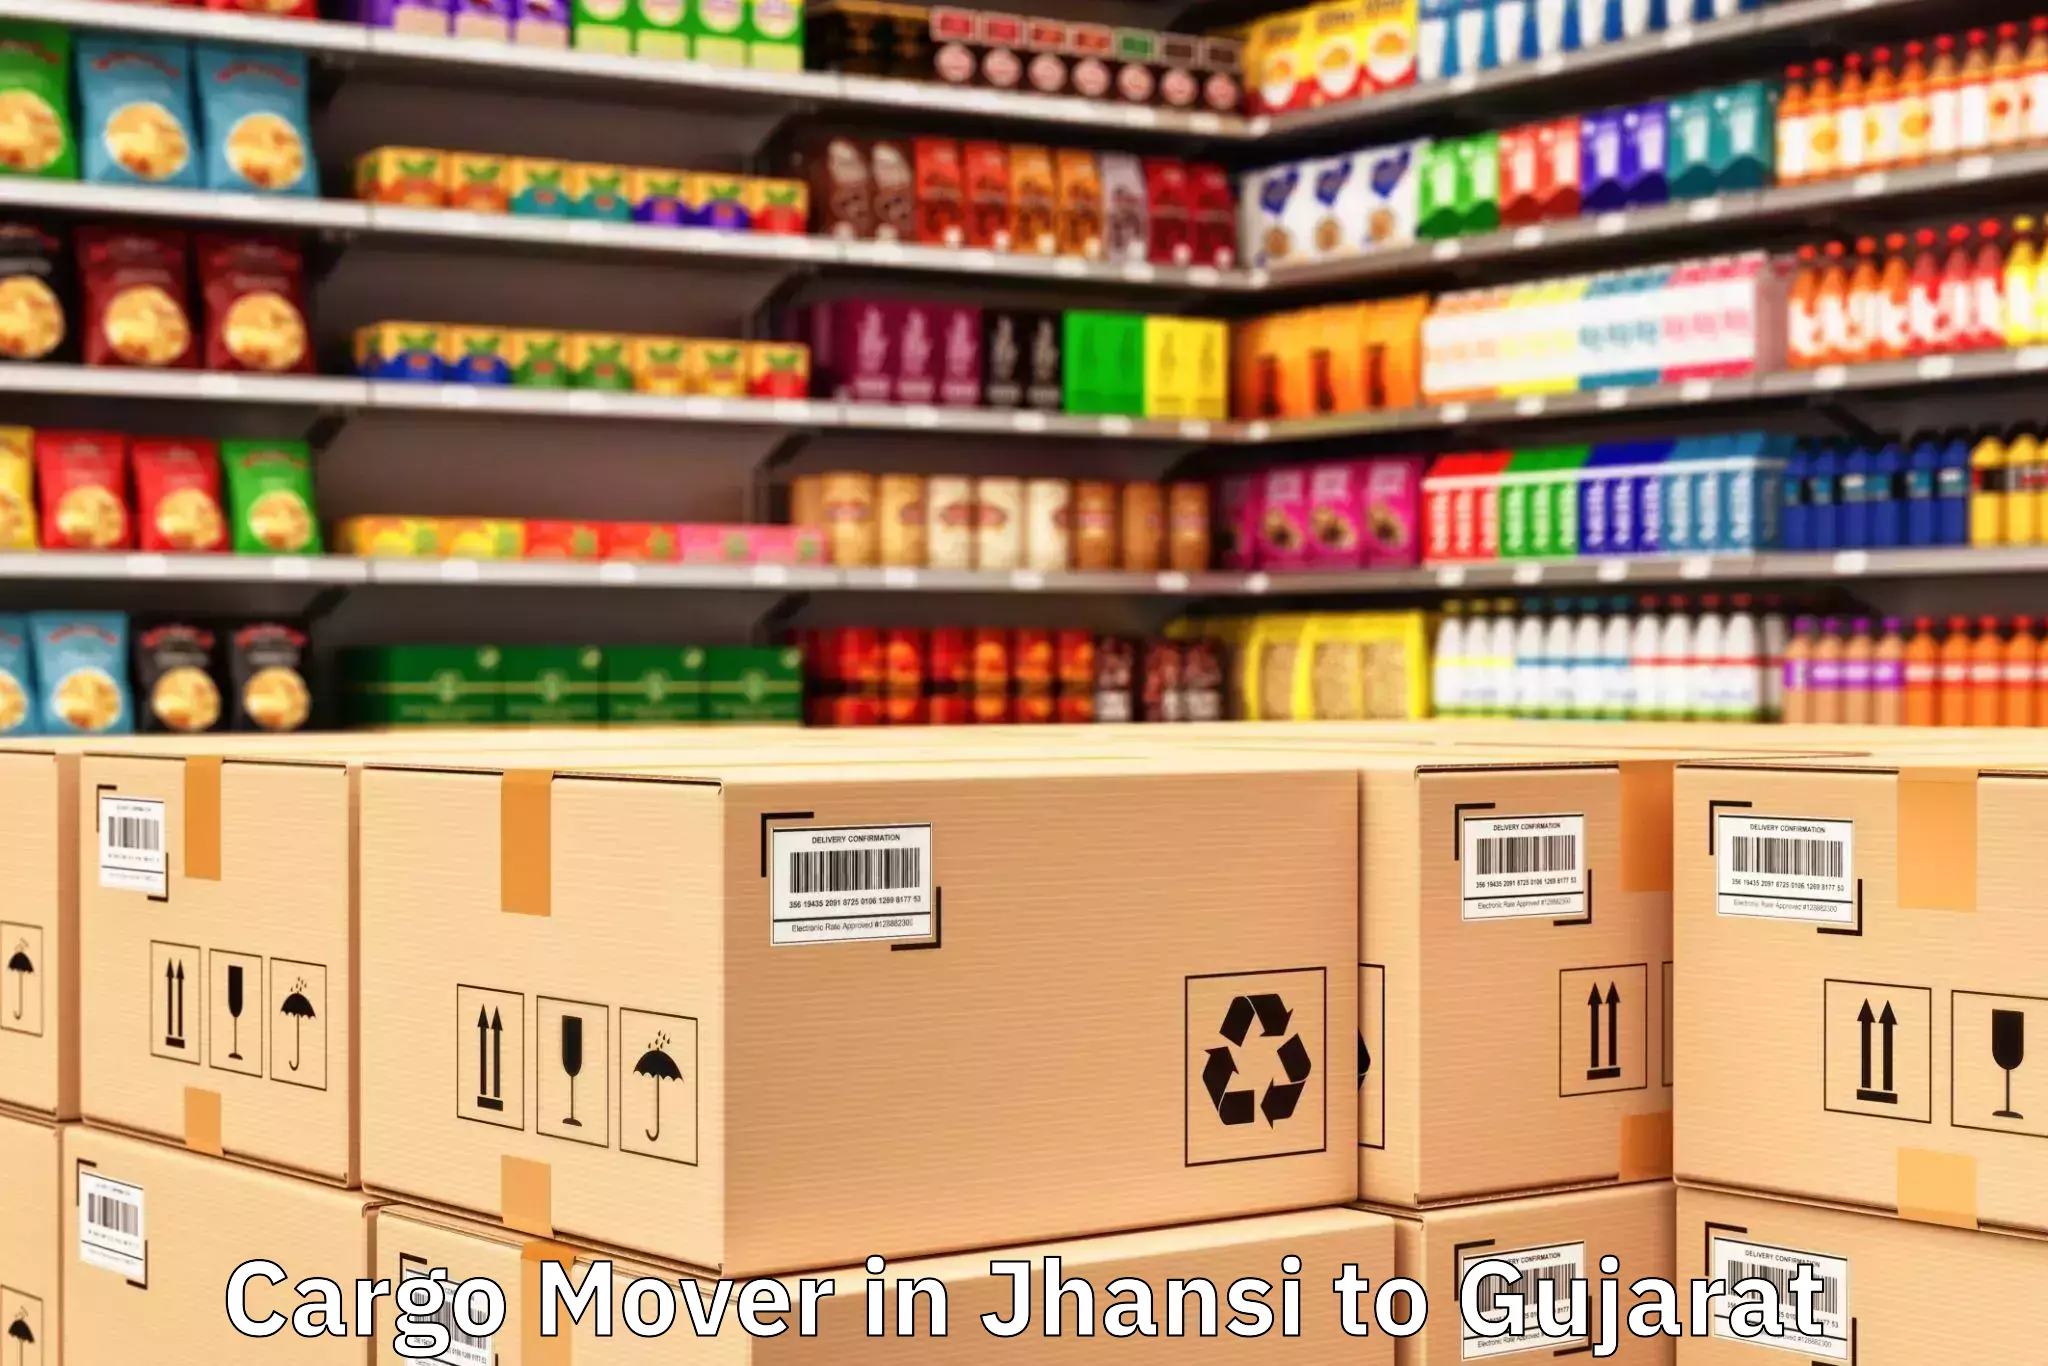 Efficient Jhansi to Gariadhar Cargo Mover